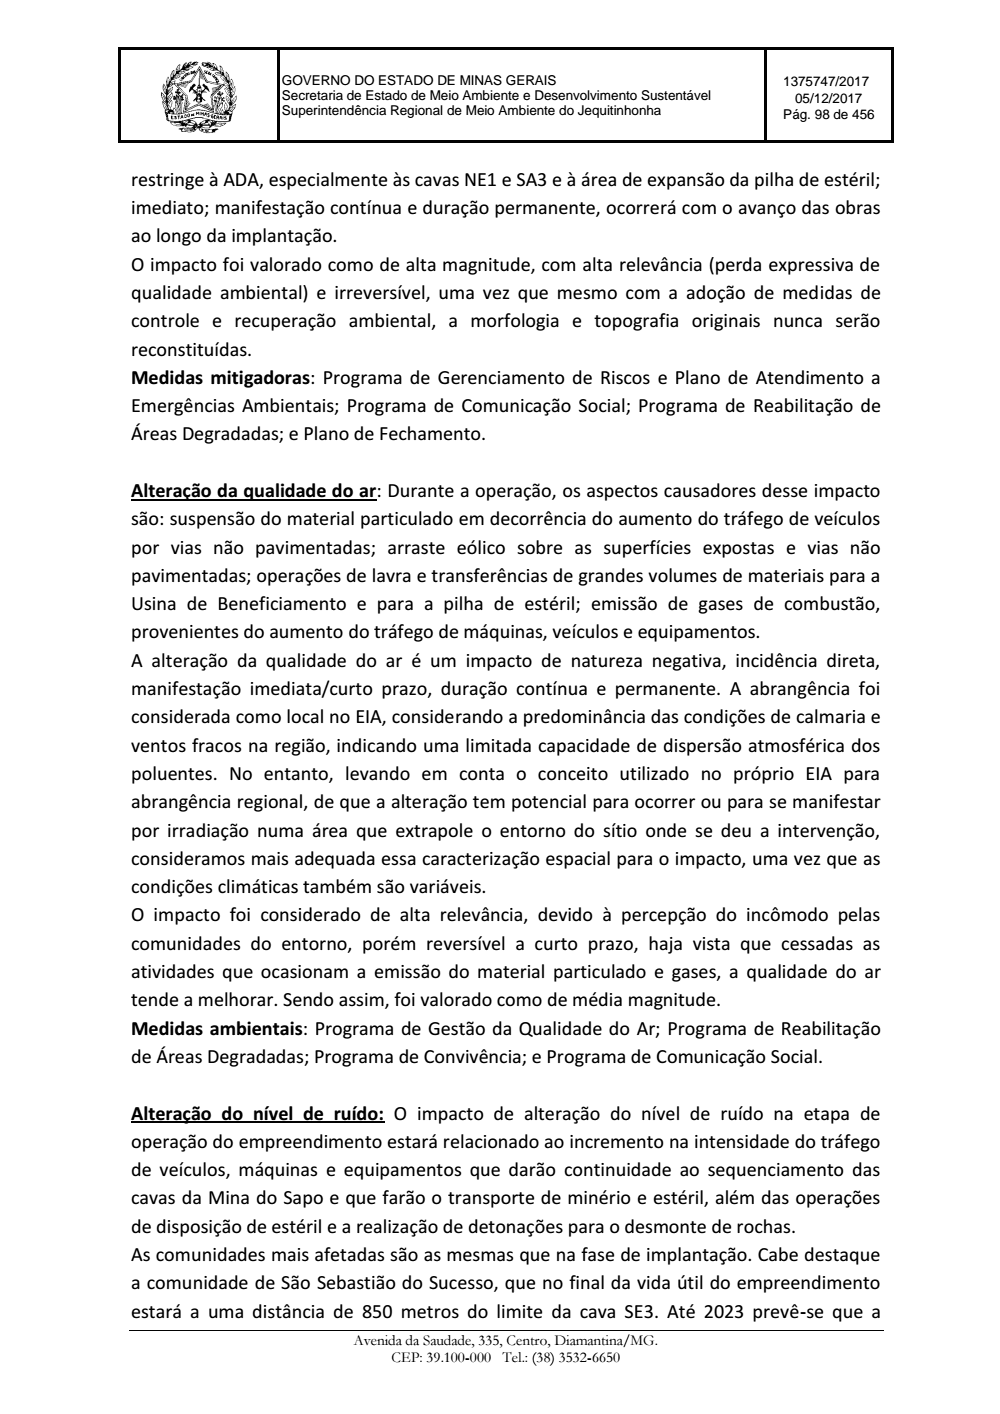 Page 98 from Parecer único da Secretaria de estado de Meio Ambiente e Desenvolvimento Sustentável (SEMAD)